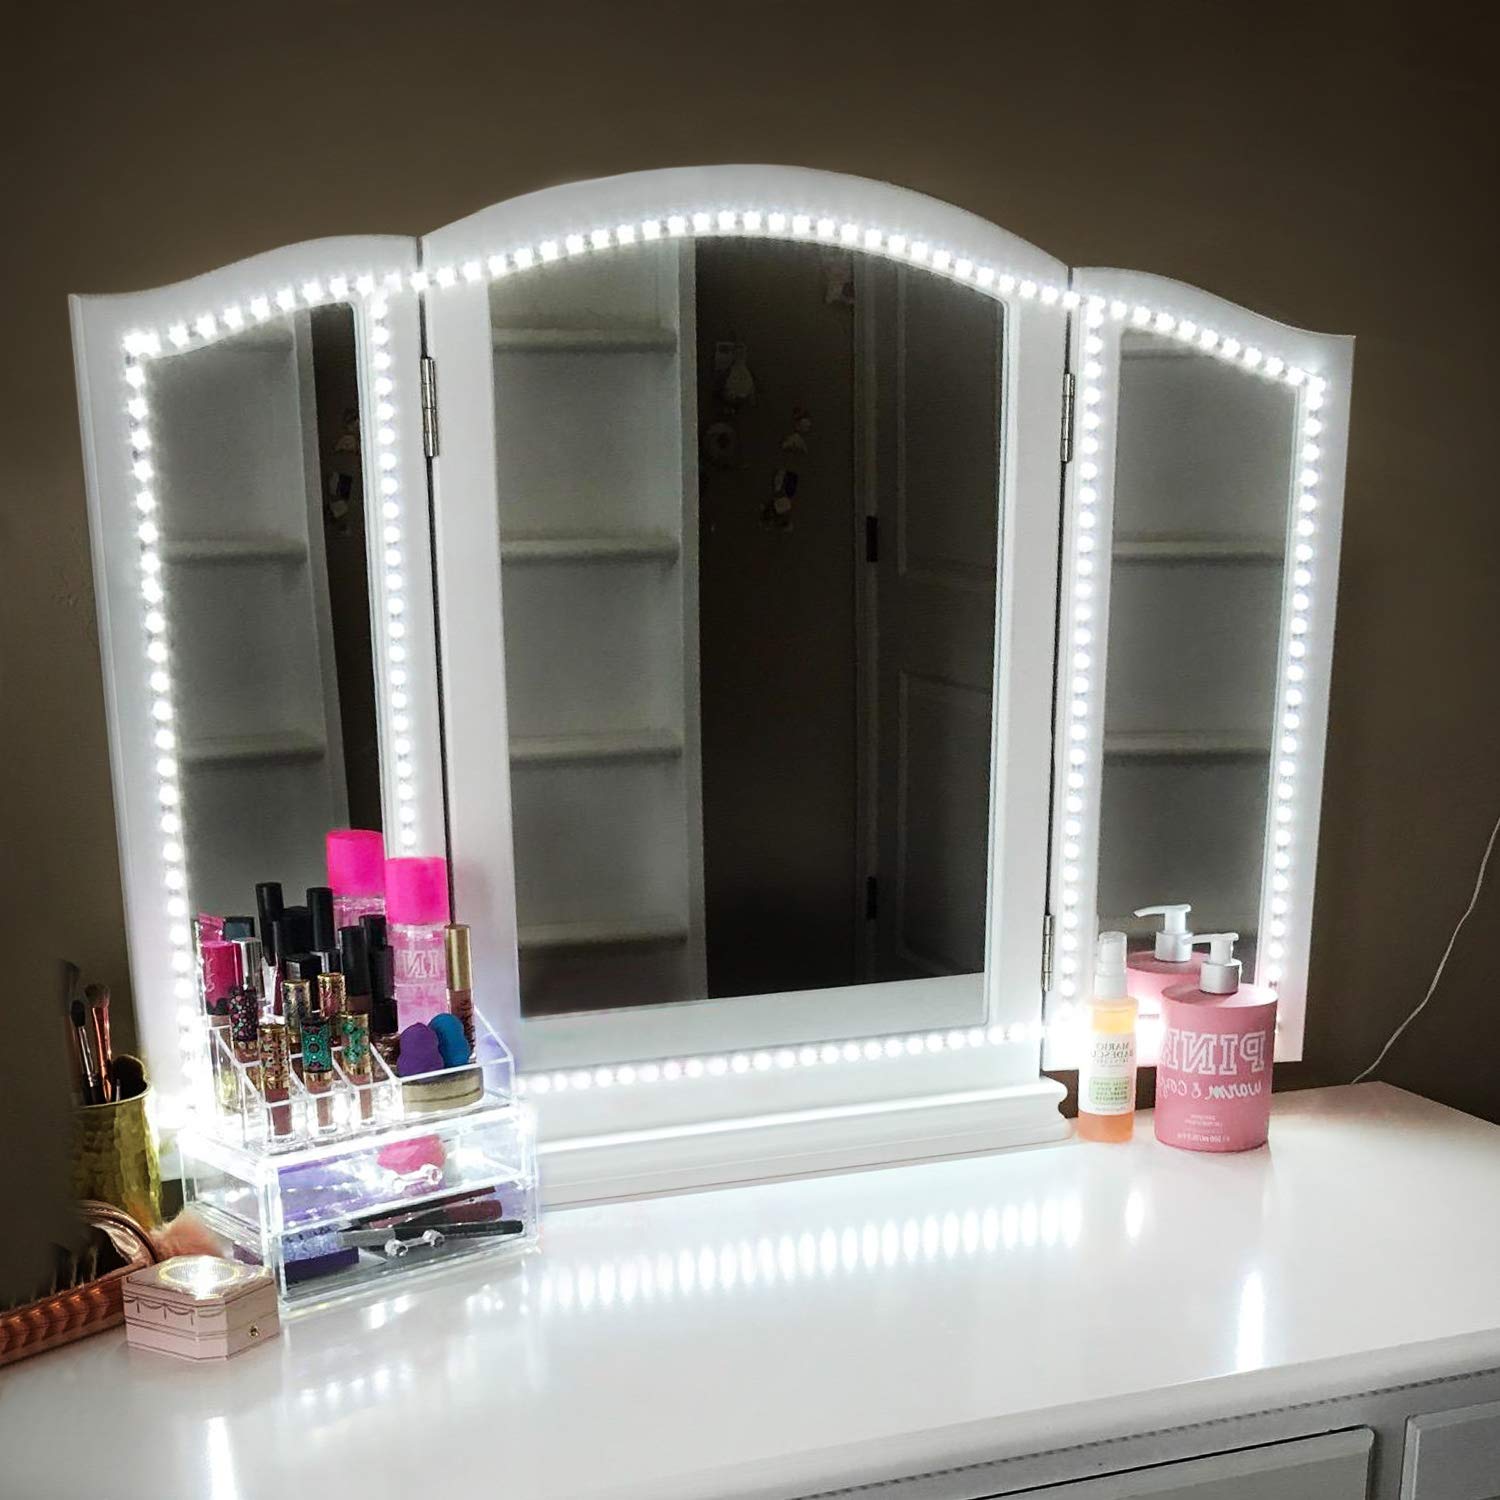 ViLSOM Bathroom Multifunctional Vanity Lighting For Makeup